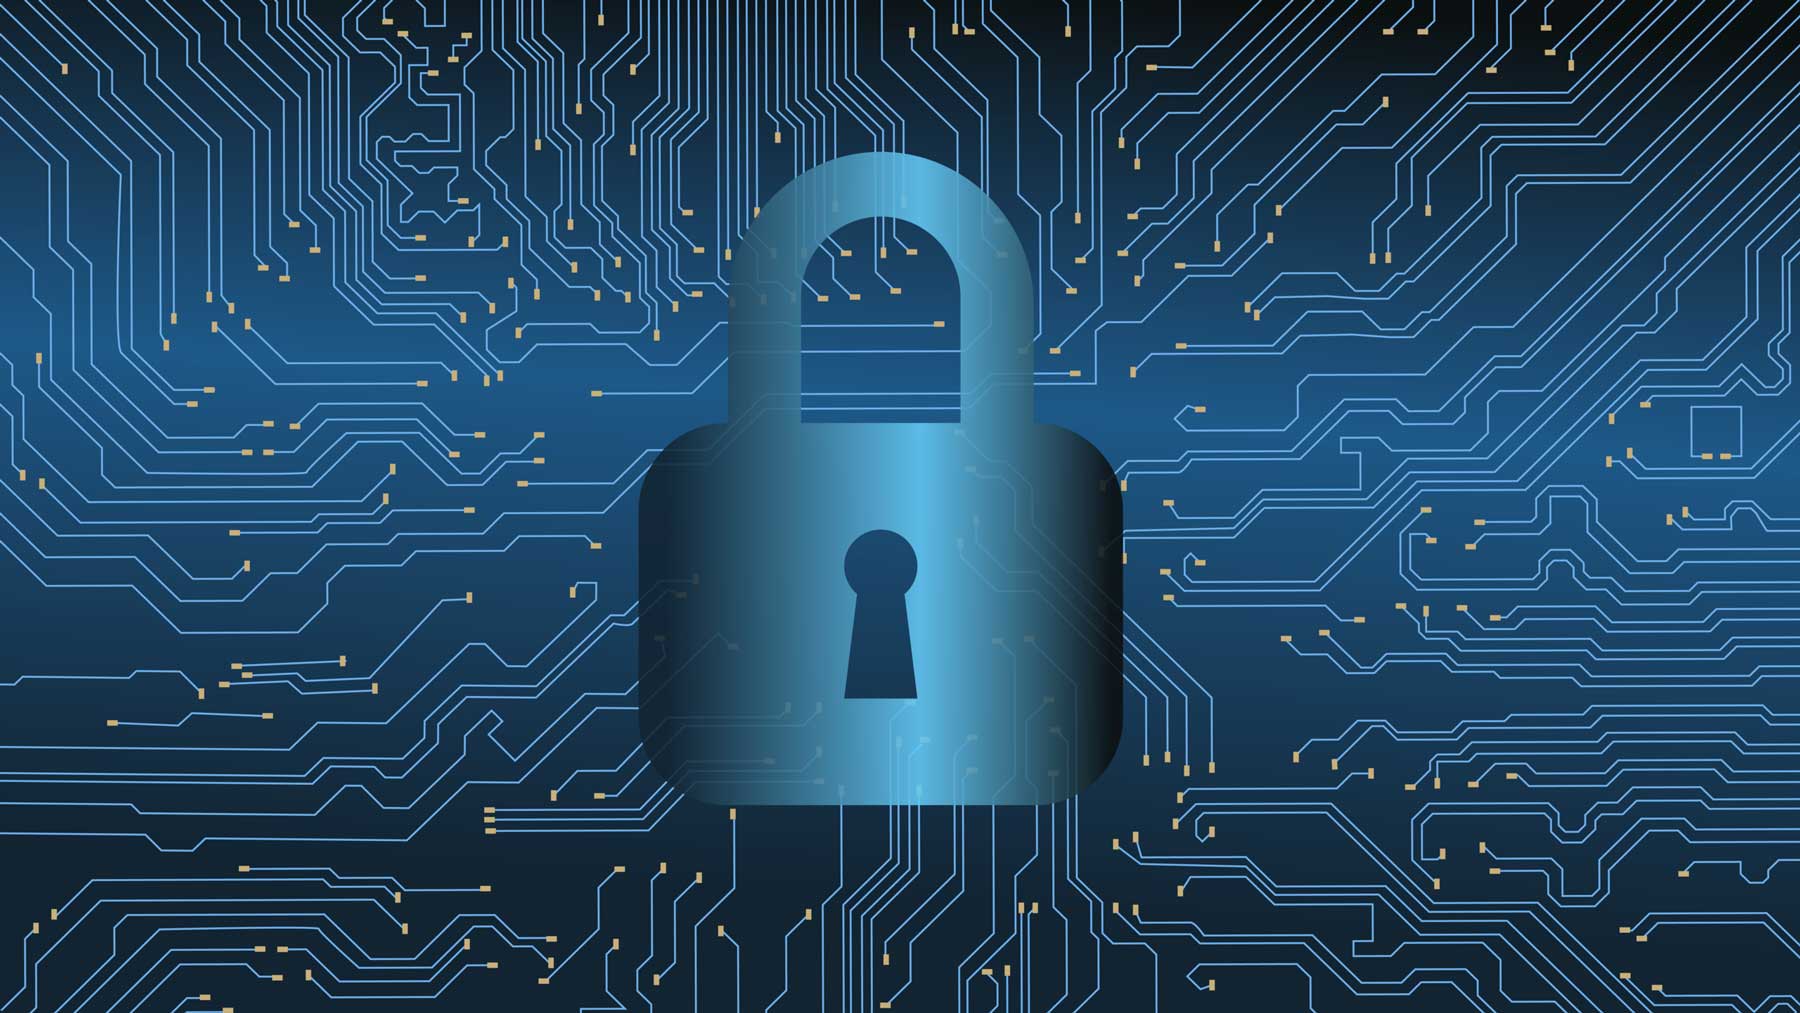  Cybersécurité : l’intelligence artificielle, une solution efficace pour lutter contre les cyberattaques selon Mahecor Dieng 